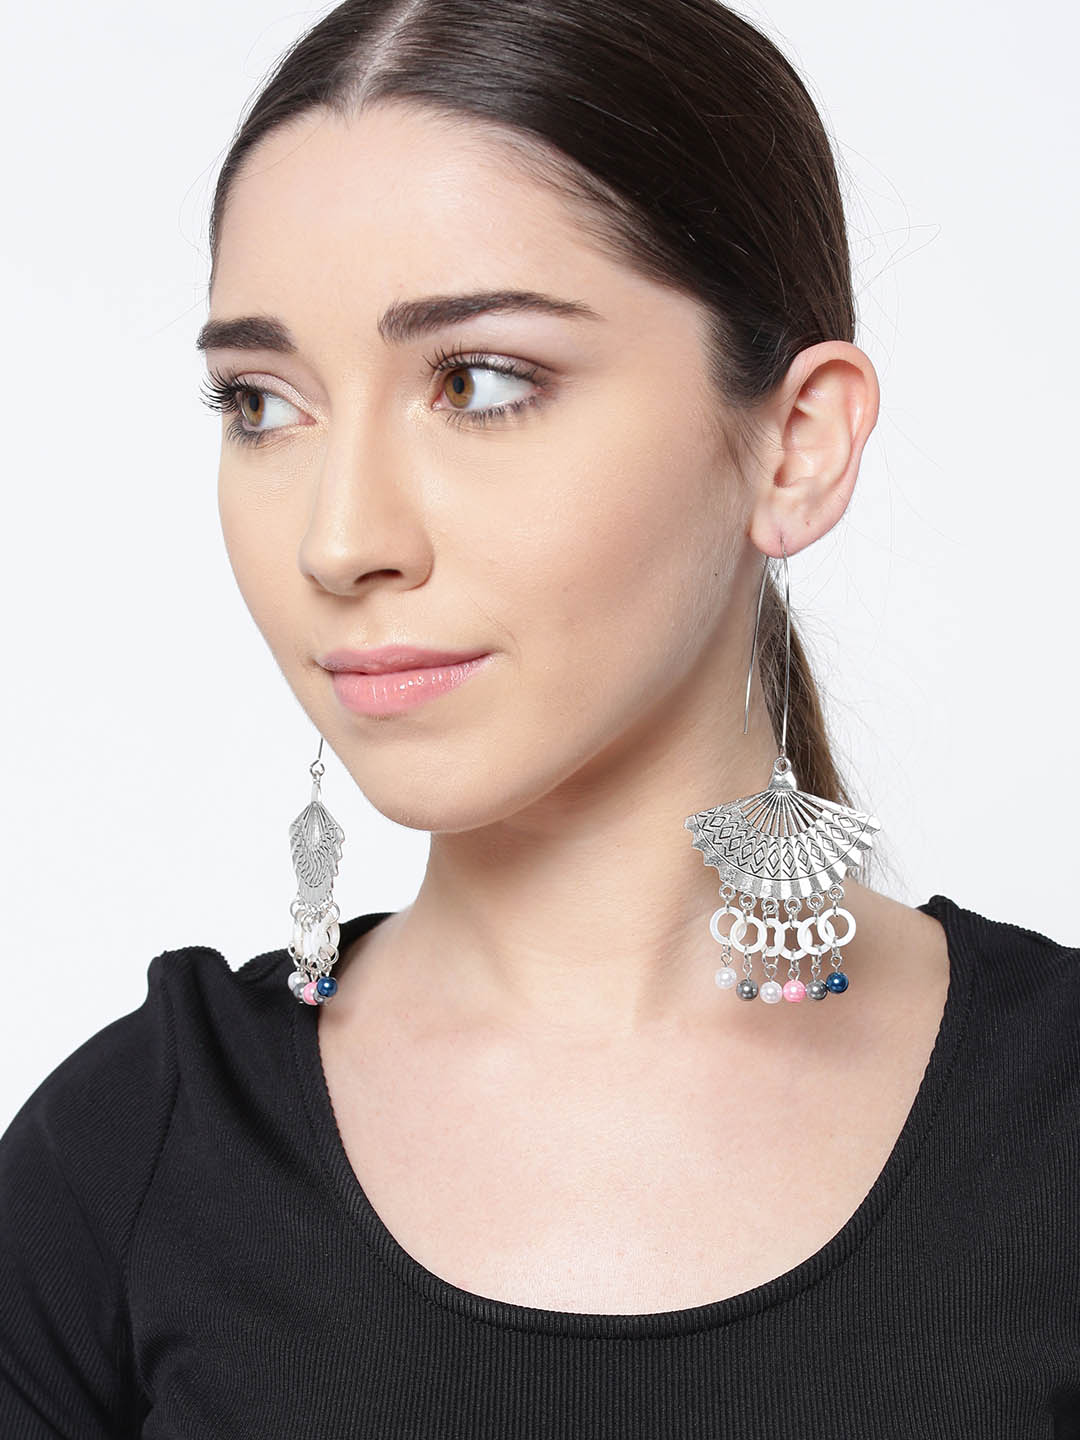 Oxidized Earrings For Women & Girls(Antique Silver)